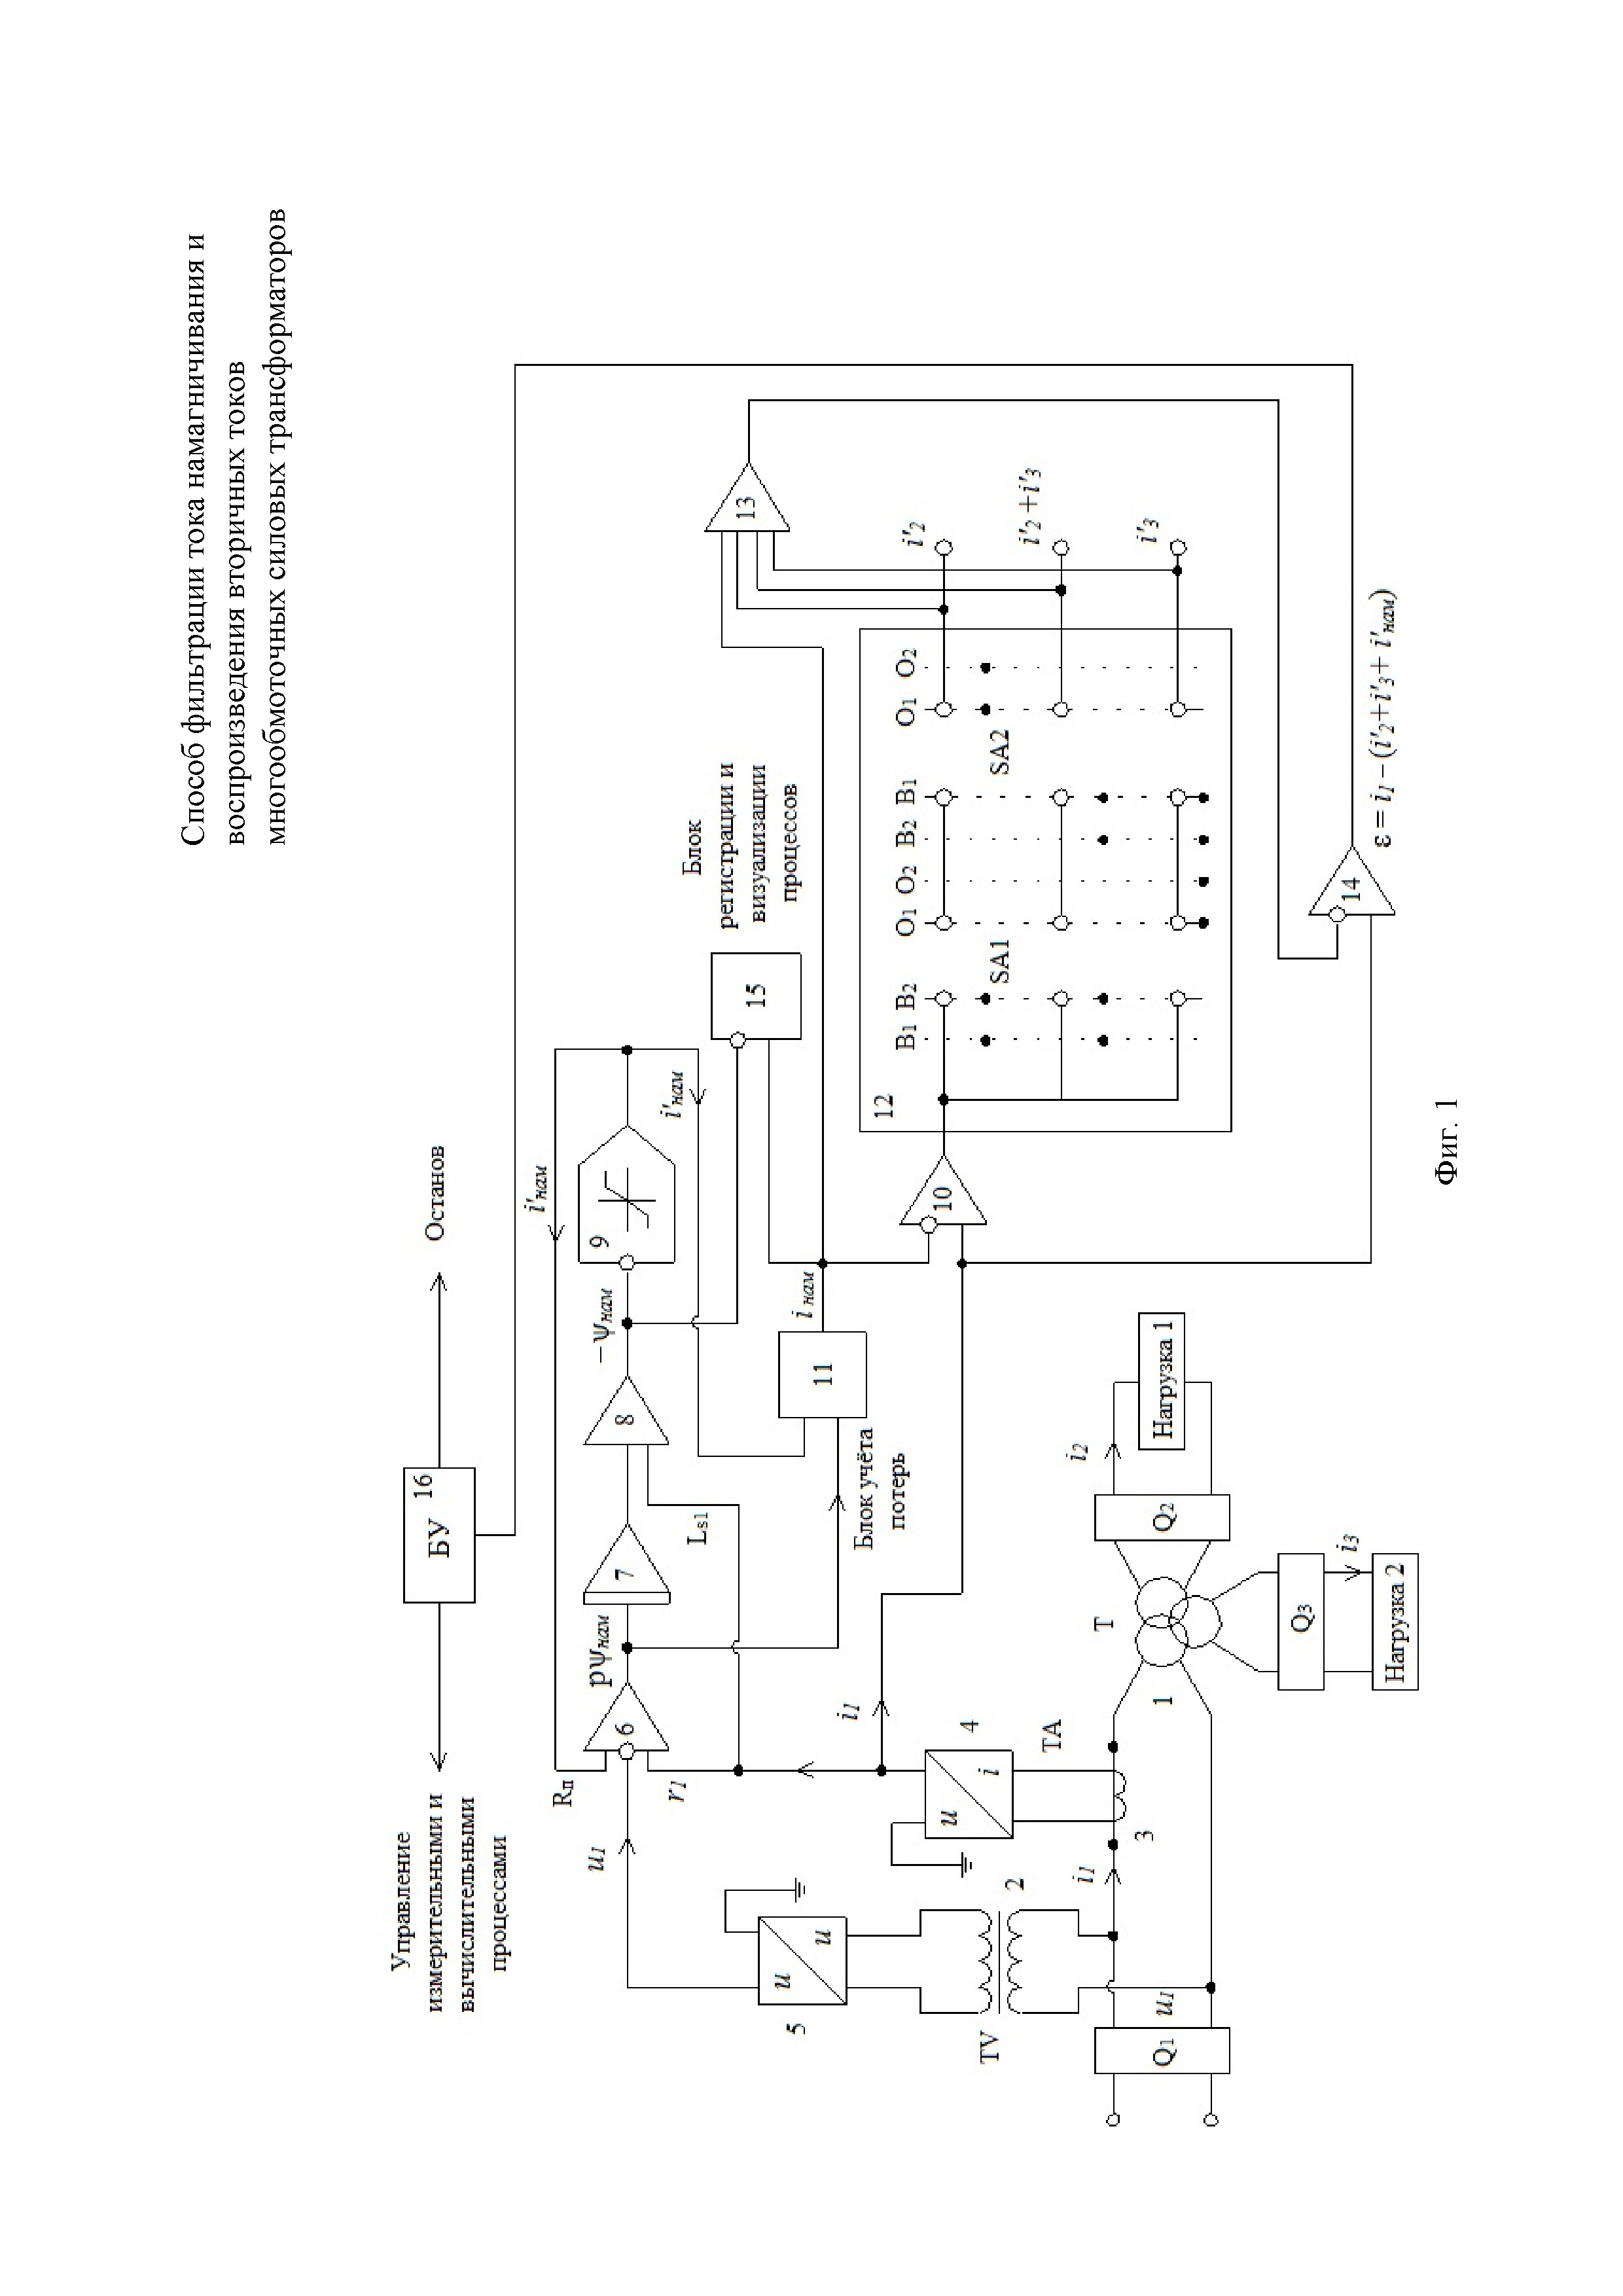 Способ фильтрации тока намагничивания и воспроизведения вторичных токов многообмоточных силовых трансформаторов